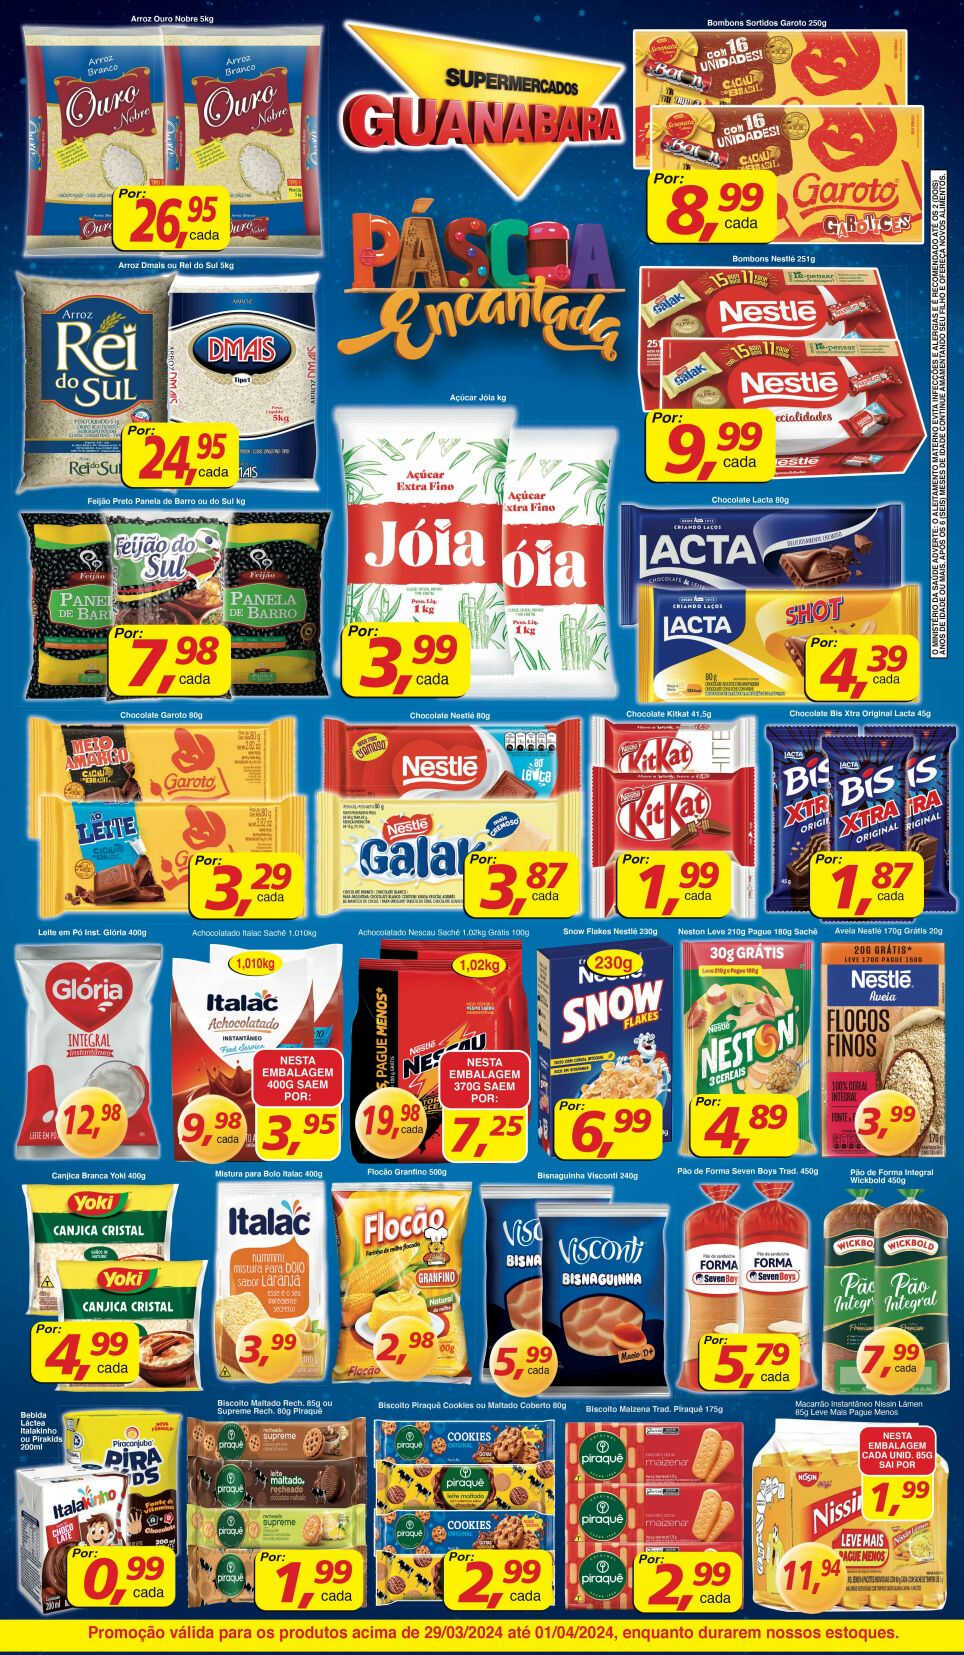 supermercados guanabara 30 03 2024 2 - Supermercados Guanabara valido até dia 1 de Abril de 2024